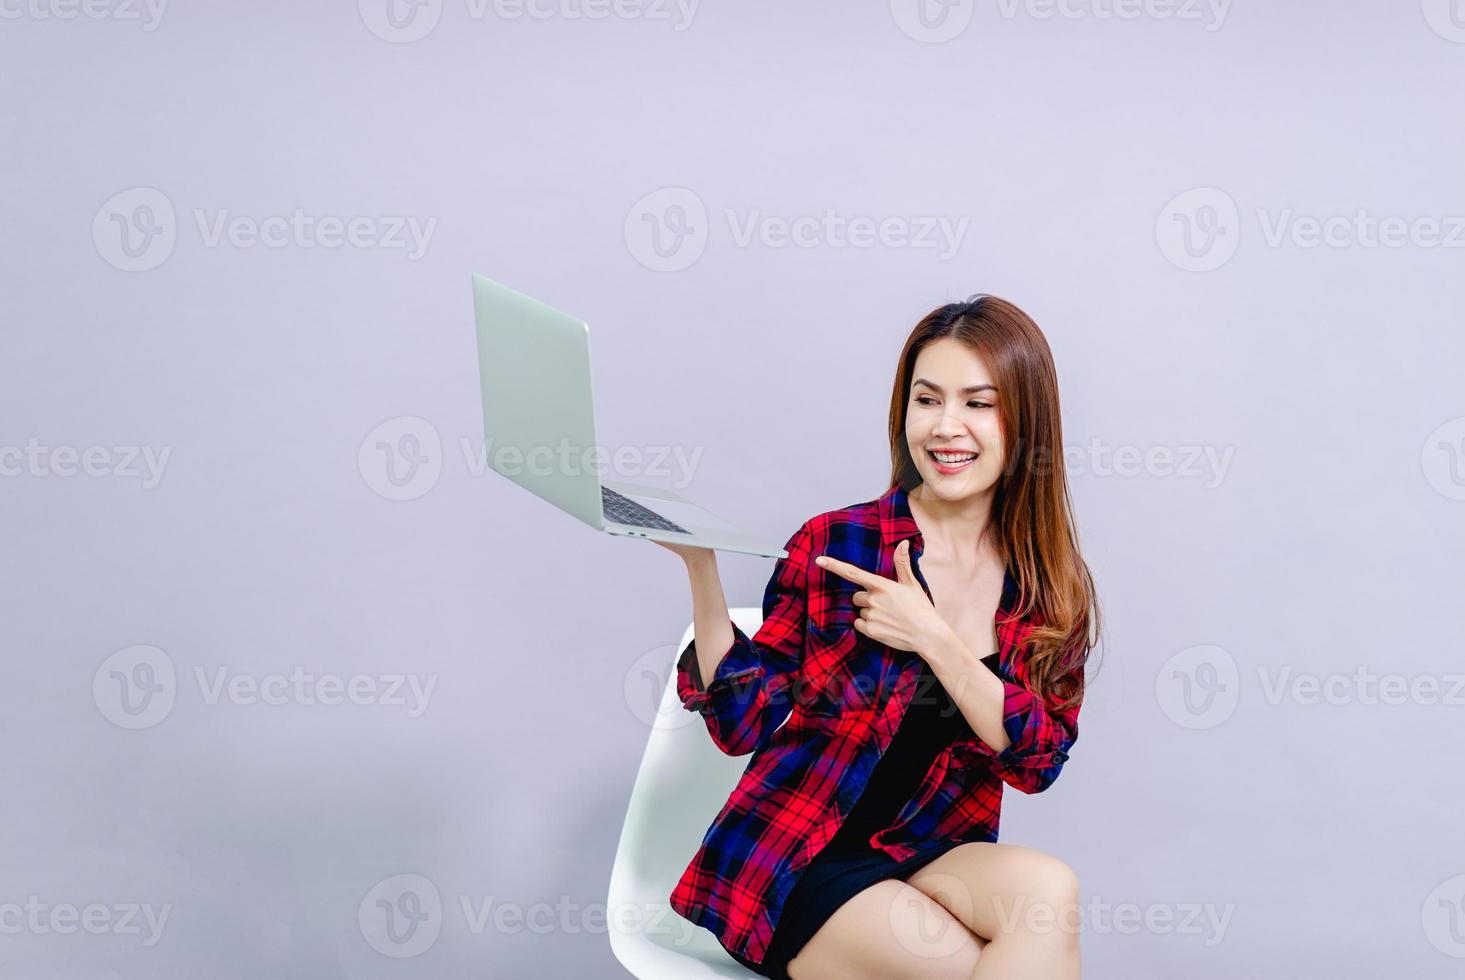 vrouwen en laptops zitten gelukkig op het werk het concept van het runnen van een soepel bedrijf. foto